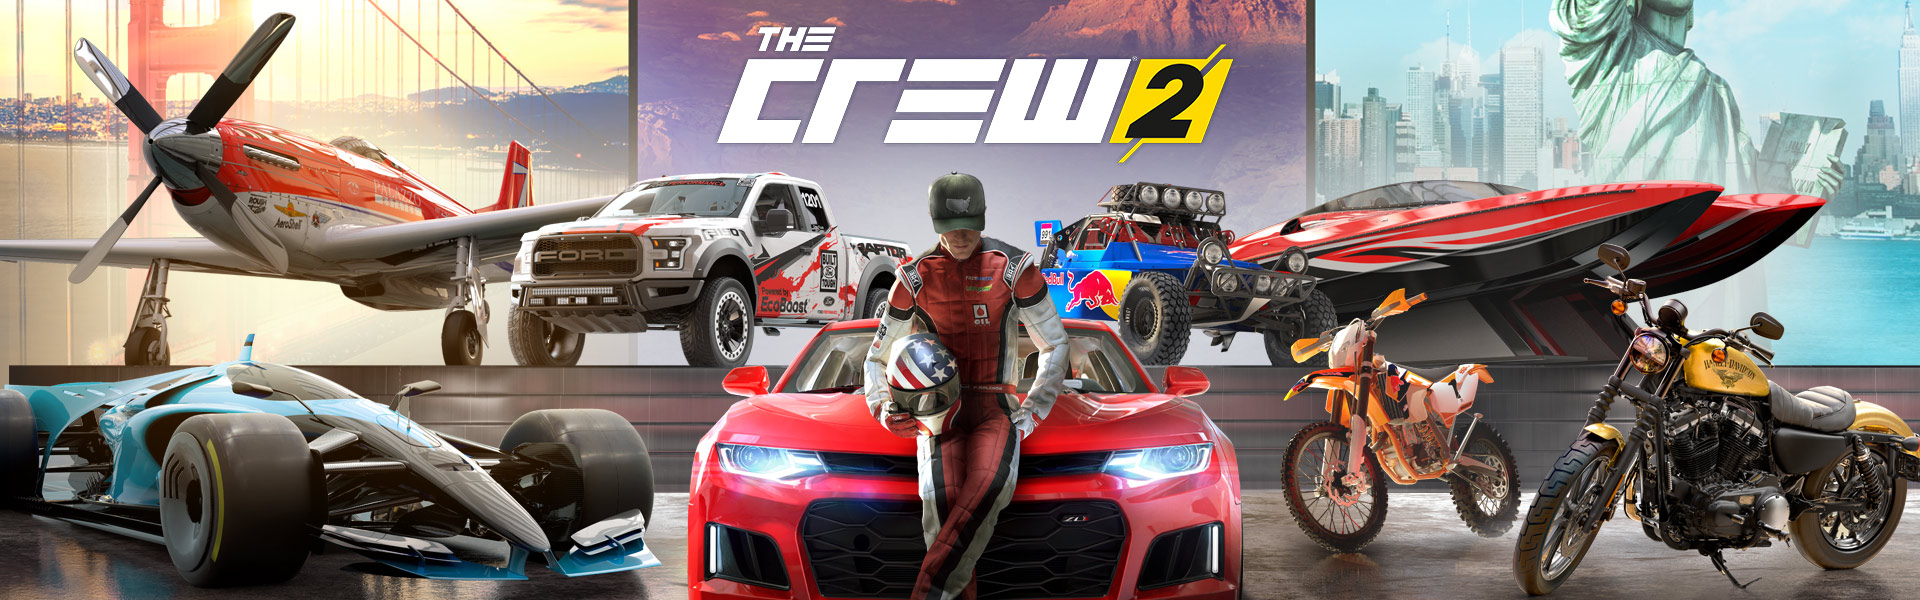 The Crew 2 sur PC et consoles : liberté et démesure !